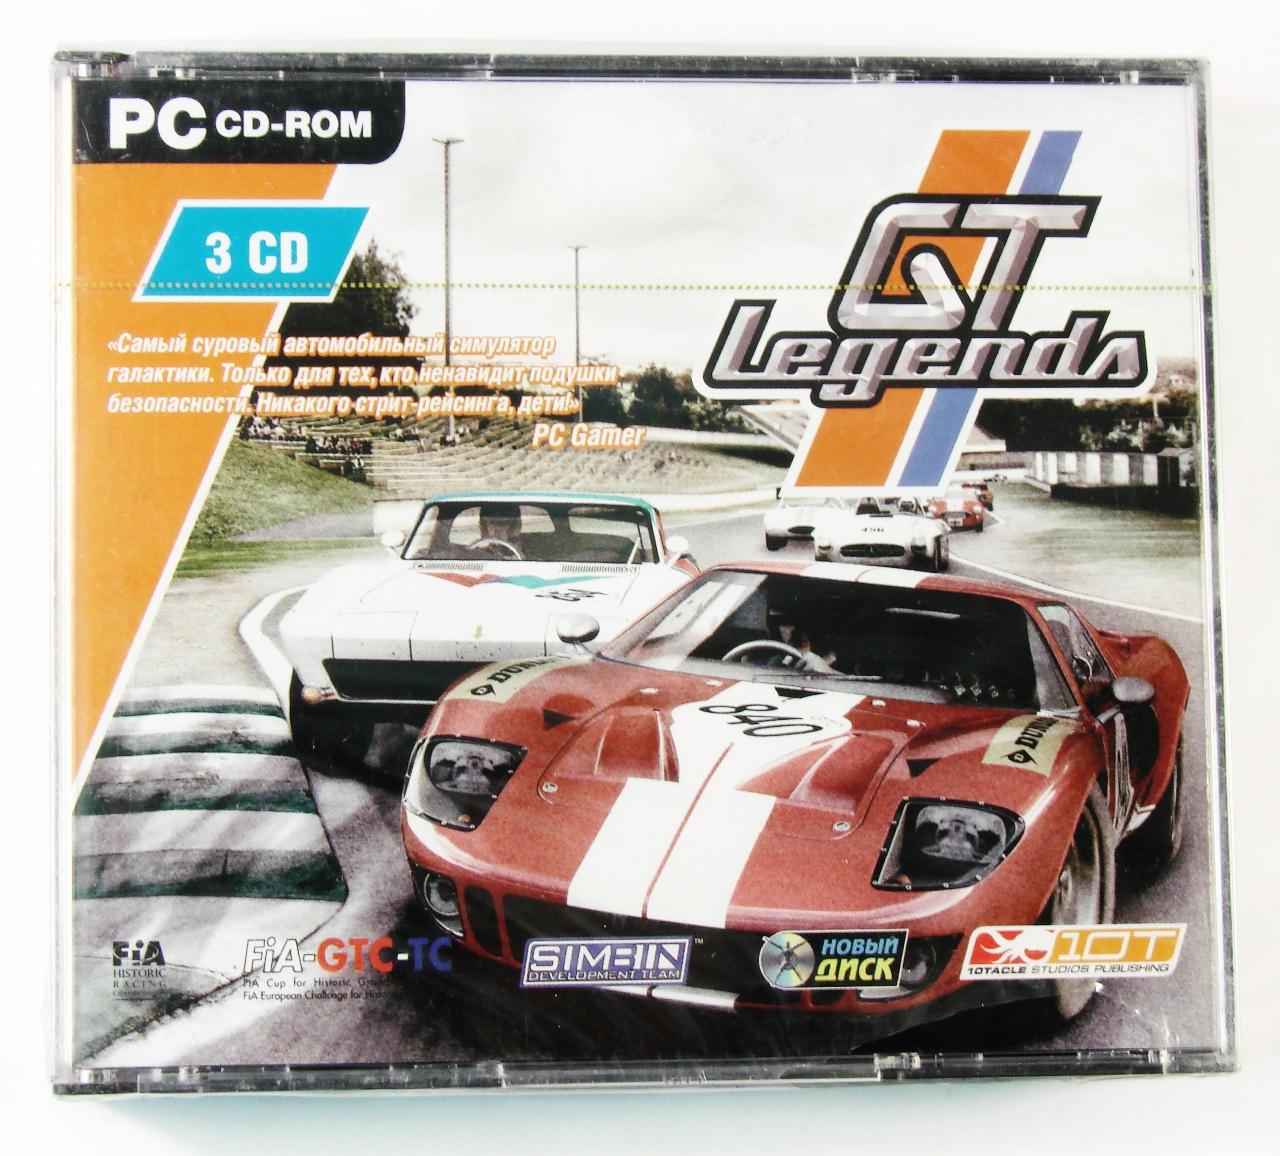 Компьютерный компакт-диск GT Legends (PC), фирма "Новый диск", CD